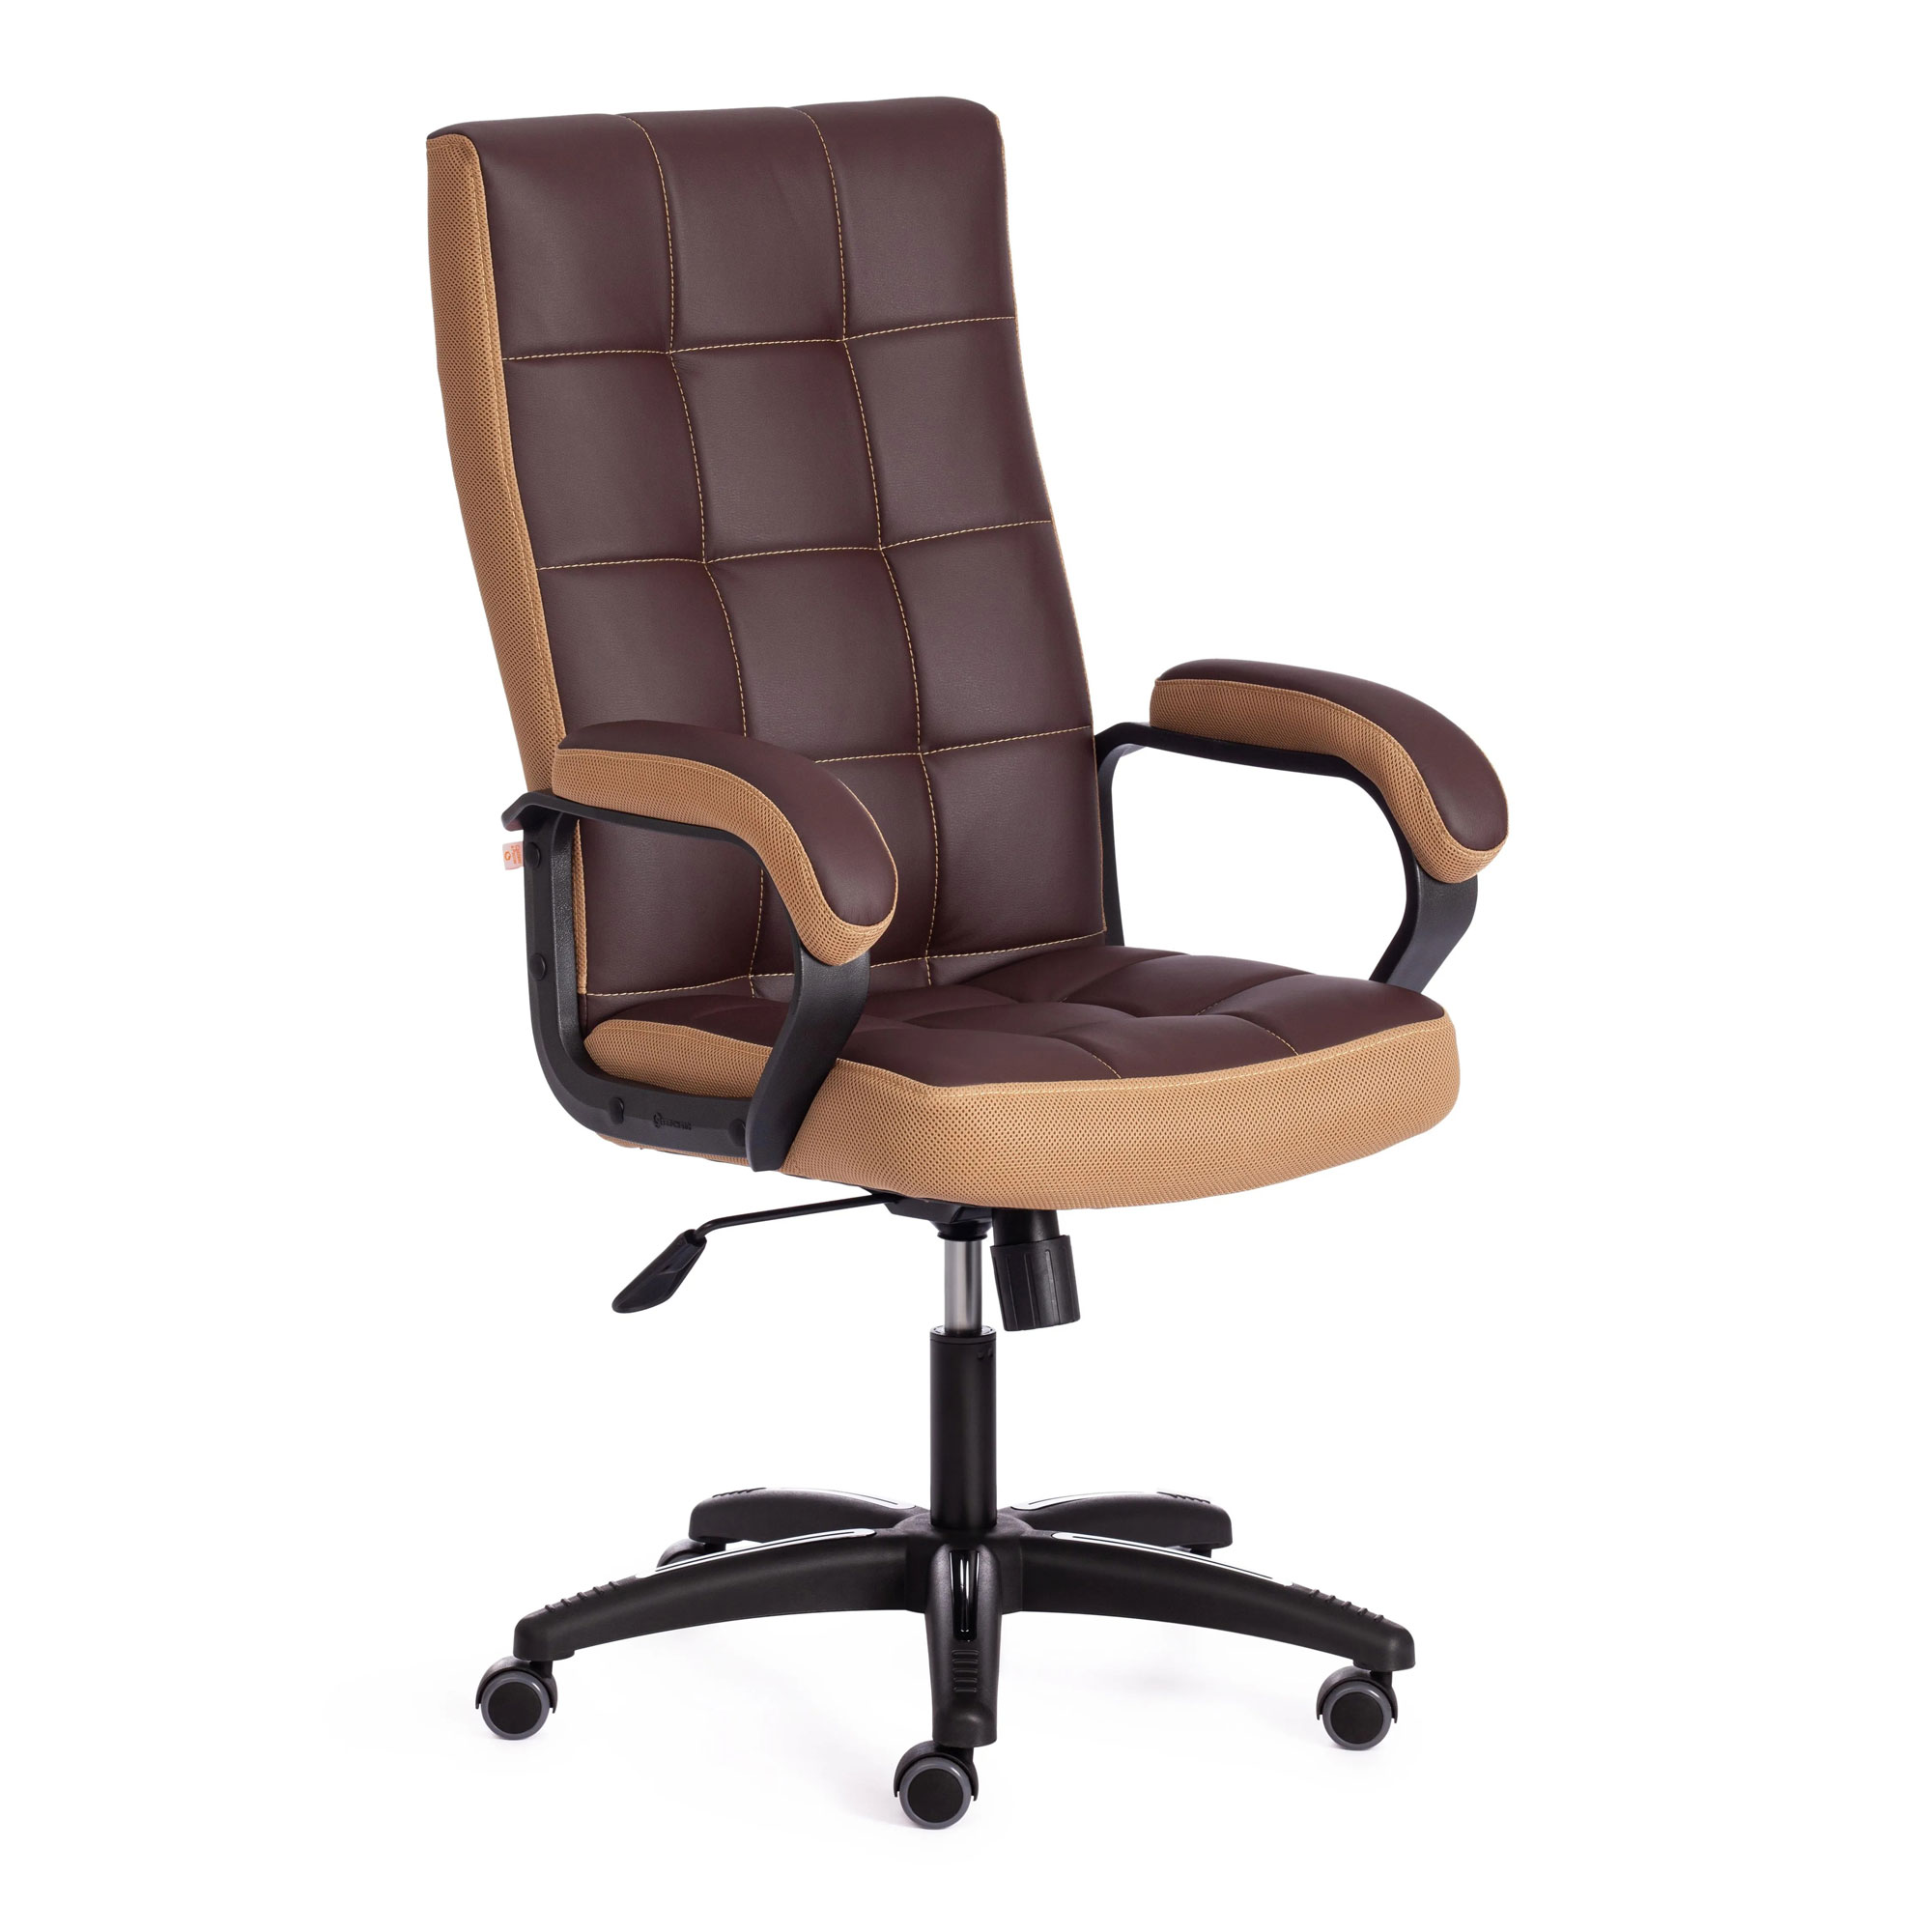 Кресло компьютерное TC искусственная кожа коричневое с бронзовым 61х47х126 см кресло компьютерное tc neo искусственная кожа коричневое с бежевым 64х49х122 см